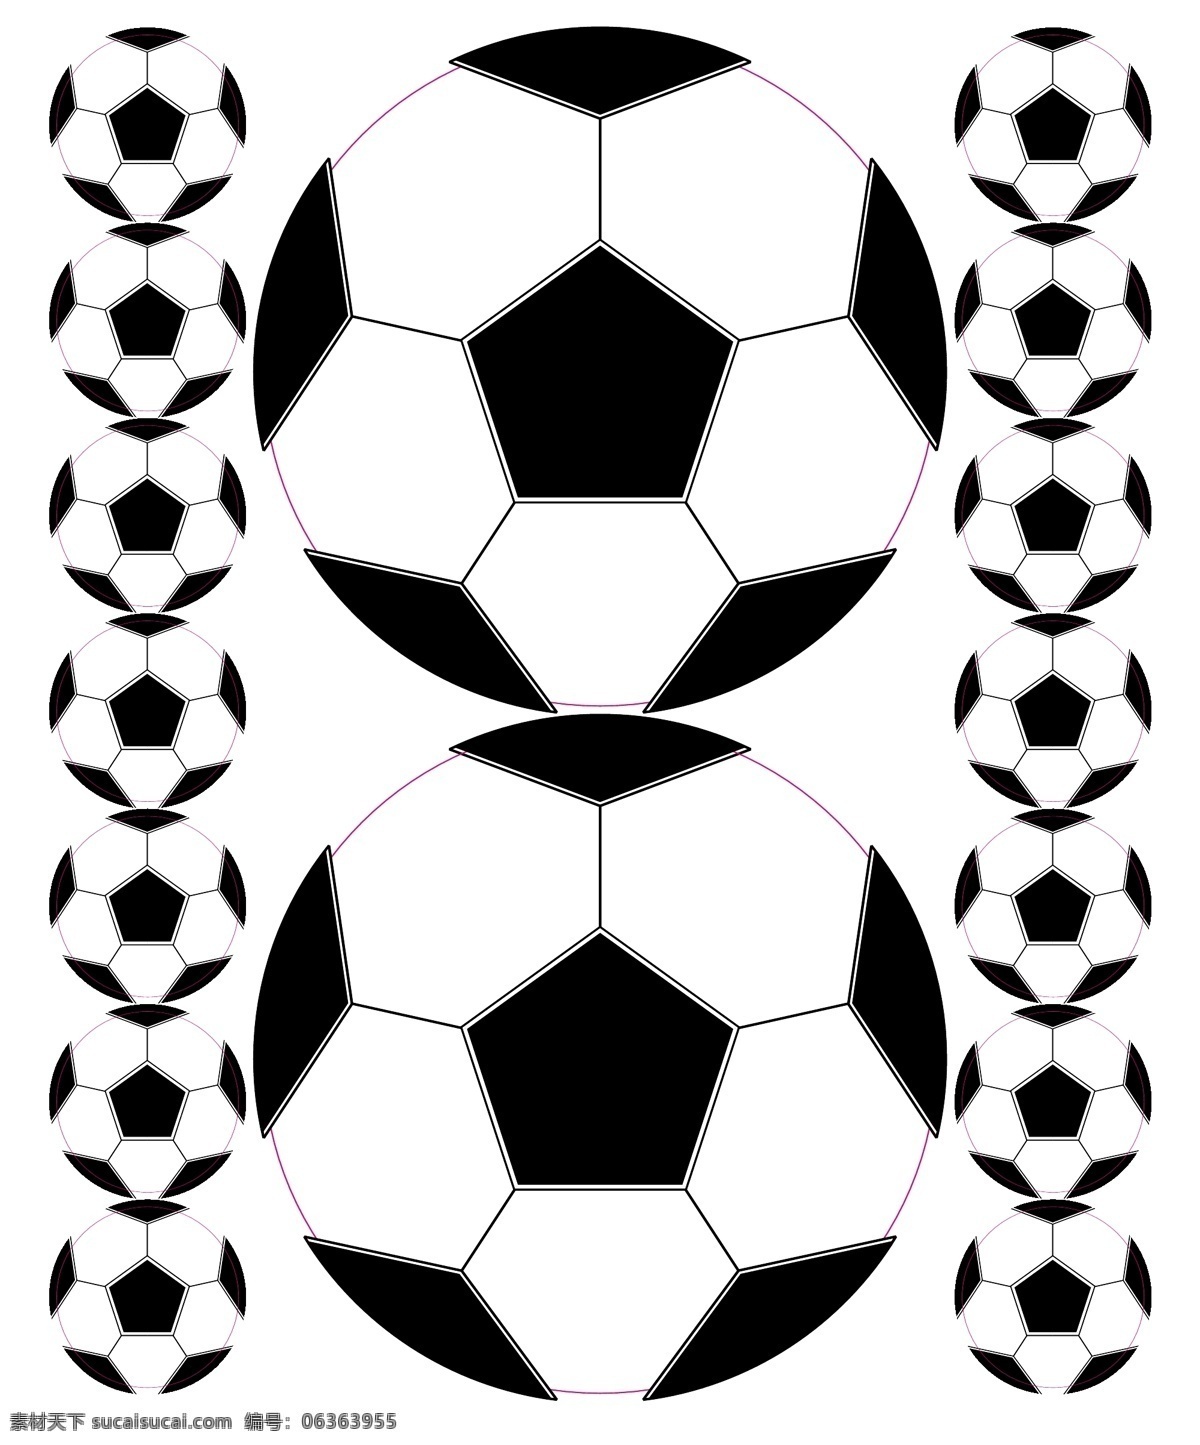 足球图片 标识标志图标 足球 足球矢量 足球图标 足球矢量素材 足球模板下载 足球大小 矢量 矢量图 日常生活